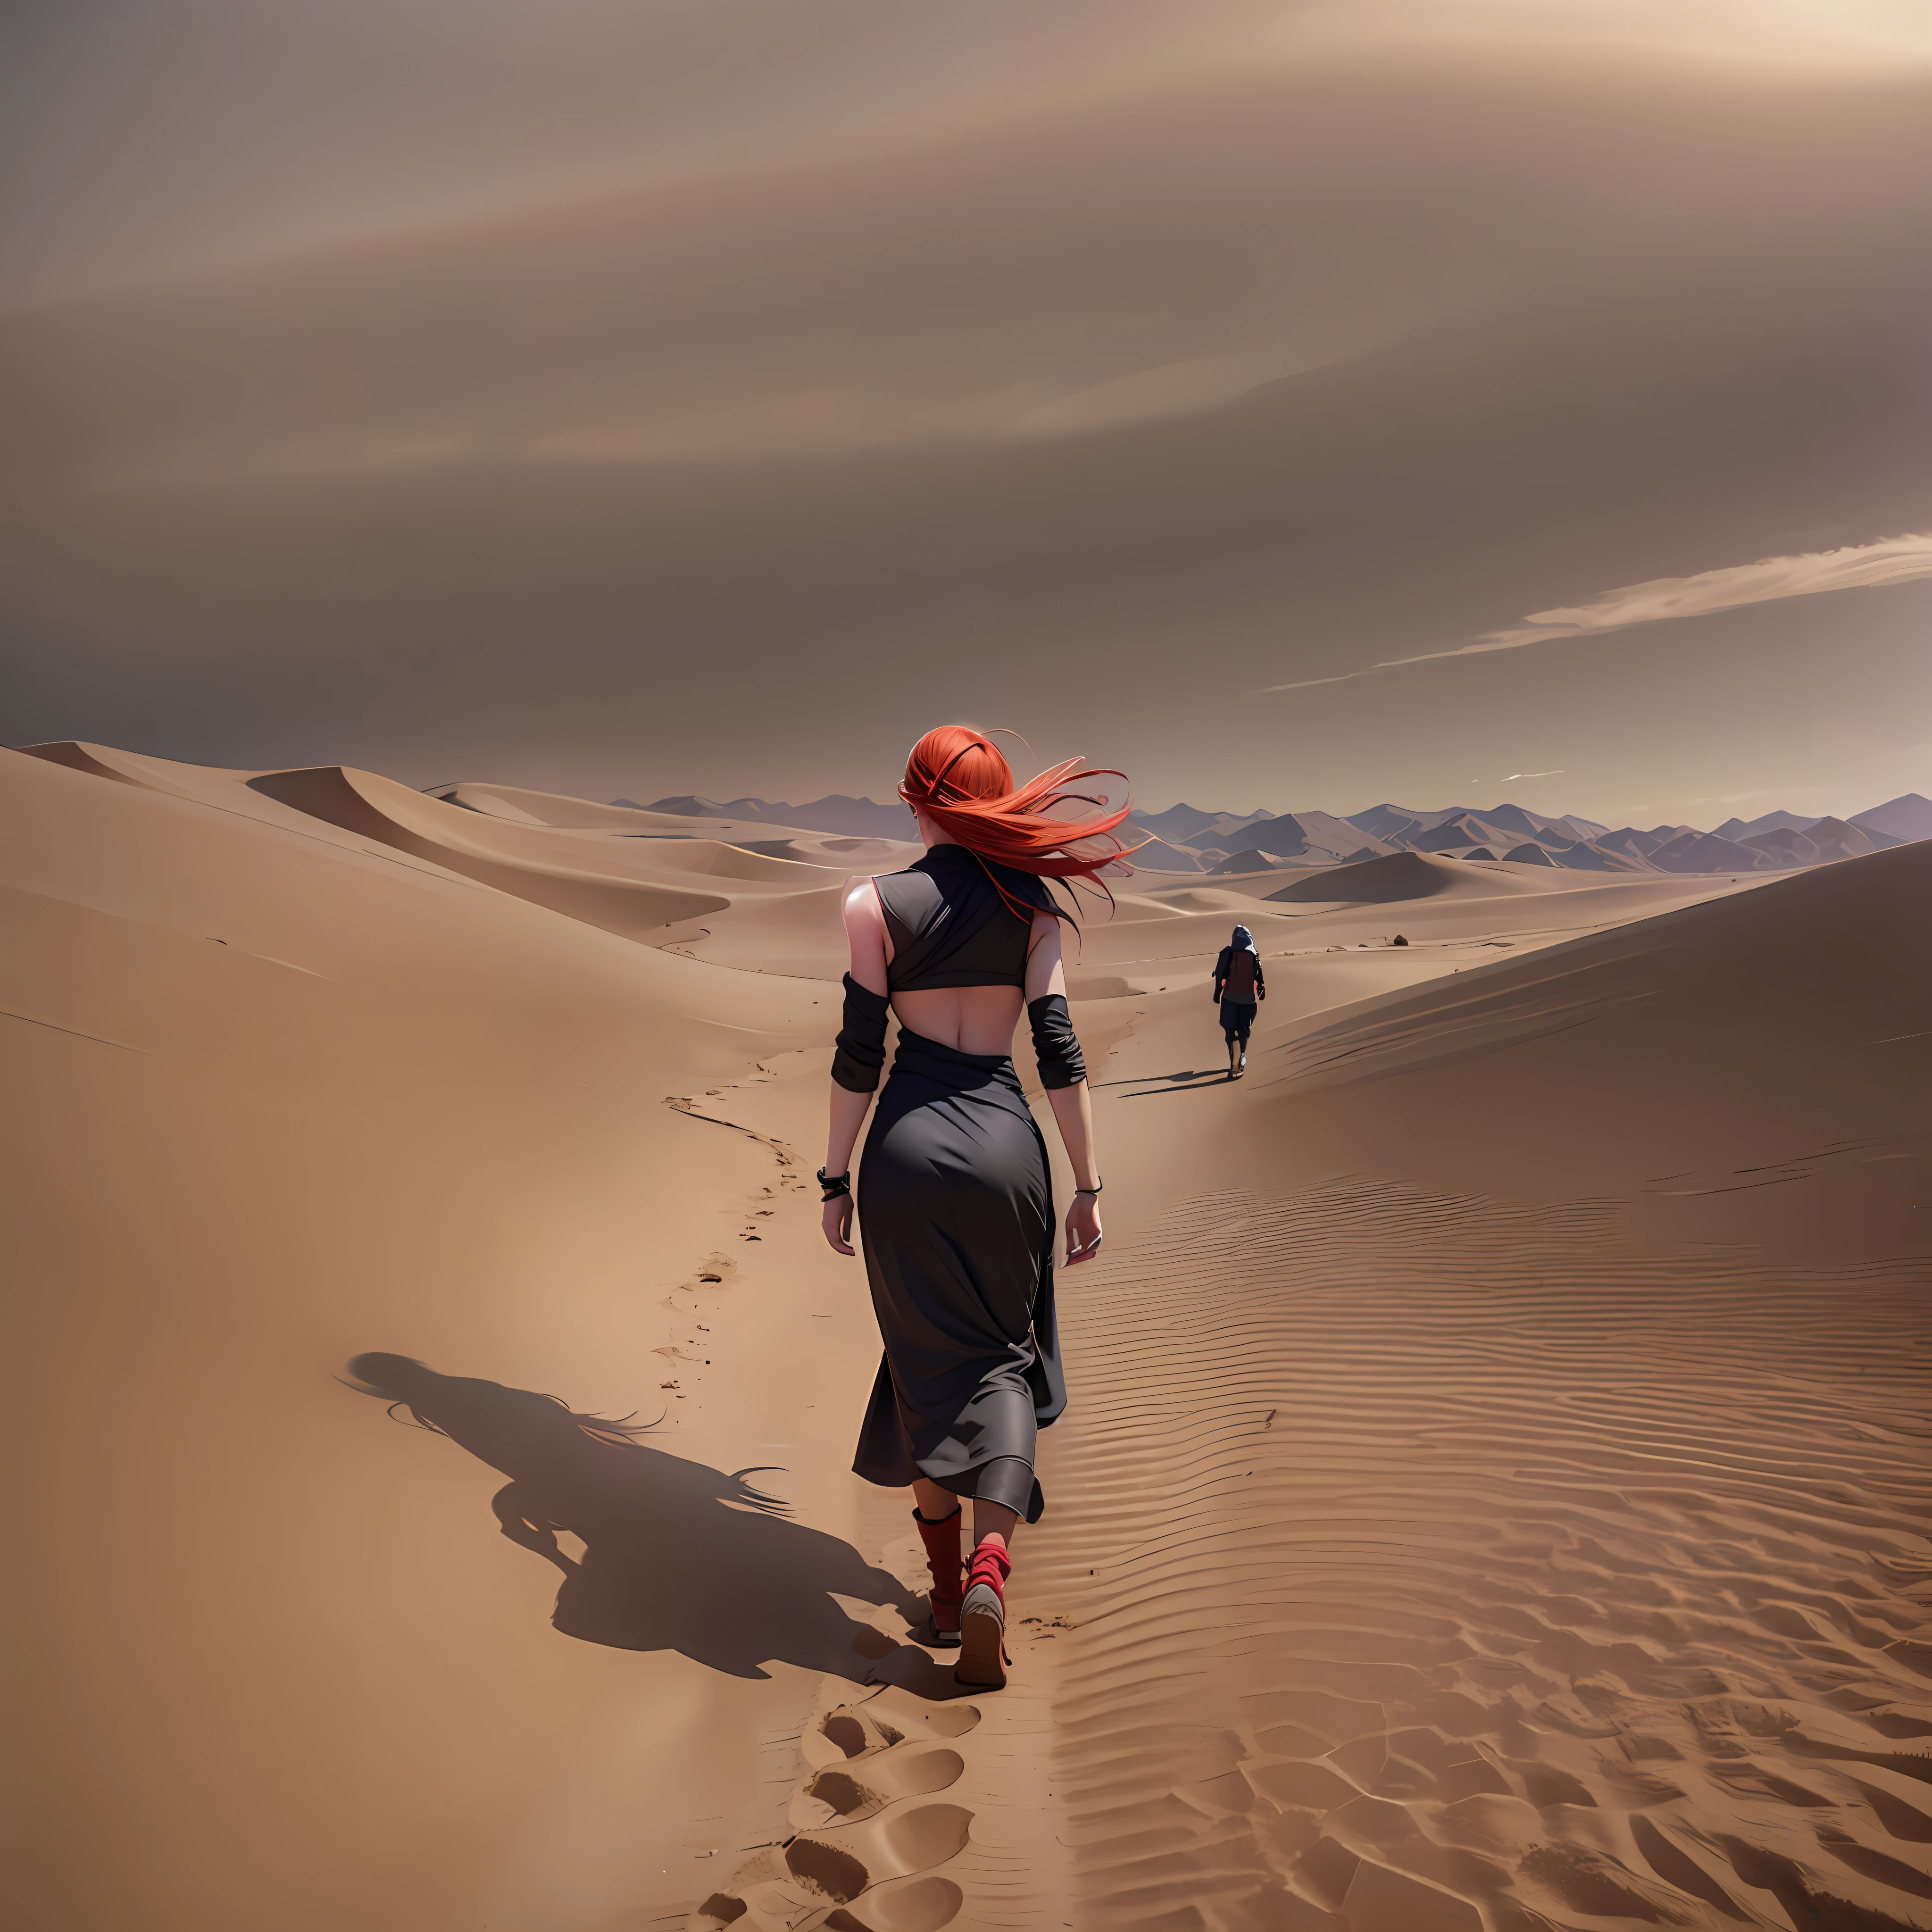 사막, 모래 폭풍, HD, 현실적인, 걷는 여자, 여자의 뒷모습, 빨강 머리, 흐르는 머리카락.